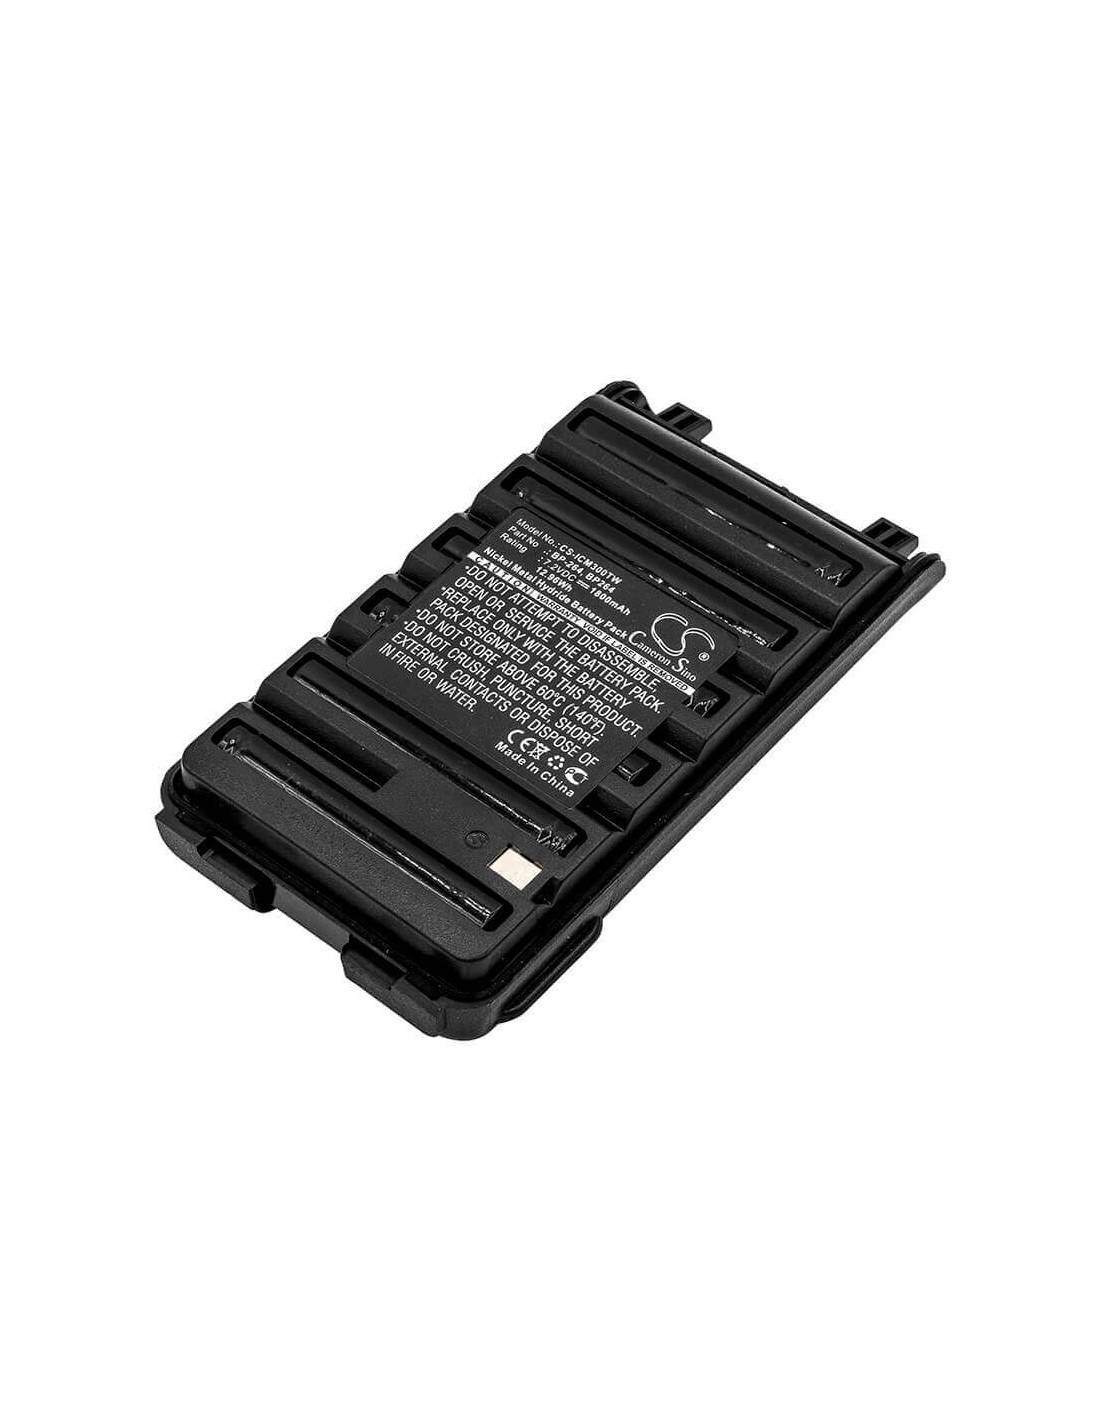 Battery for Icom Ic-f3001, Ic-f4001, Ic-f3003 7.2V, 1800mAh - 12.96Wh